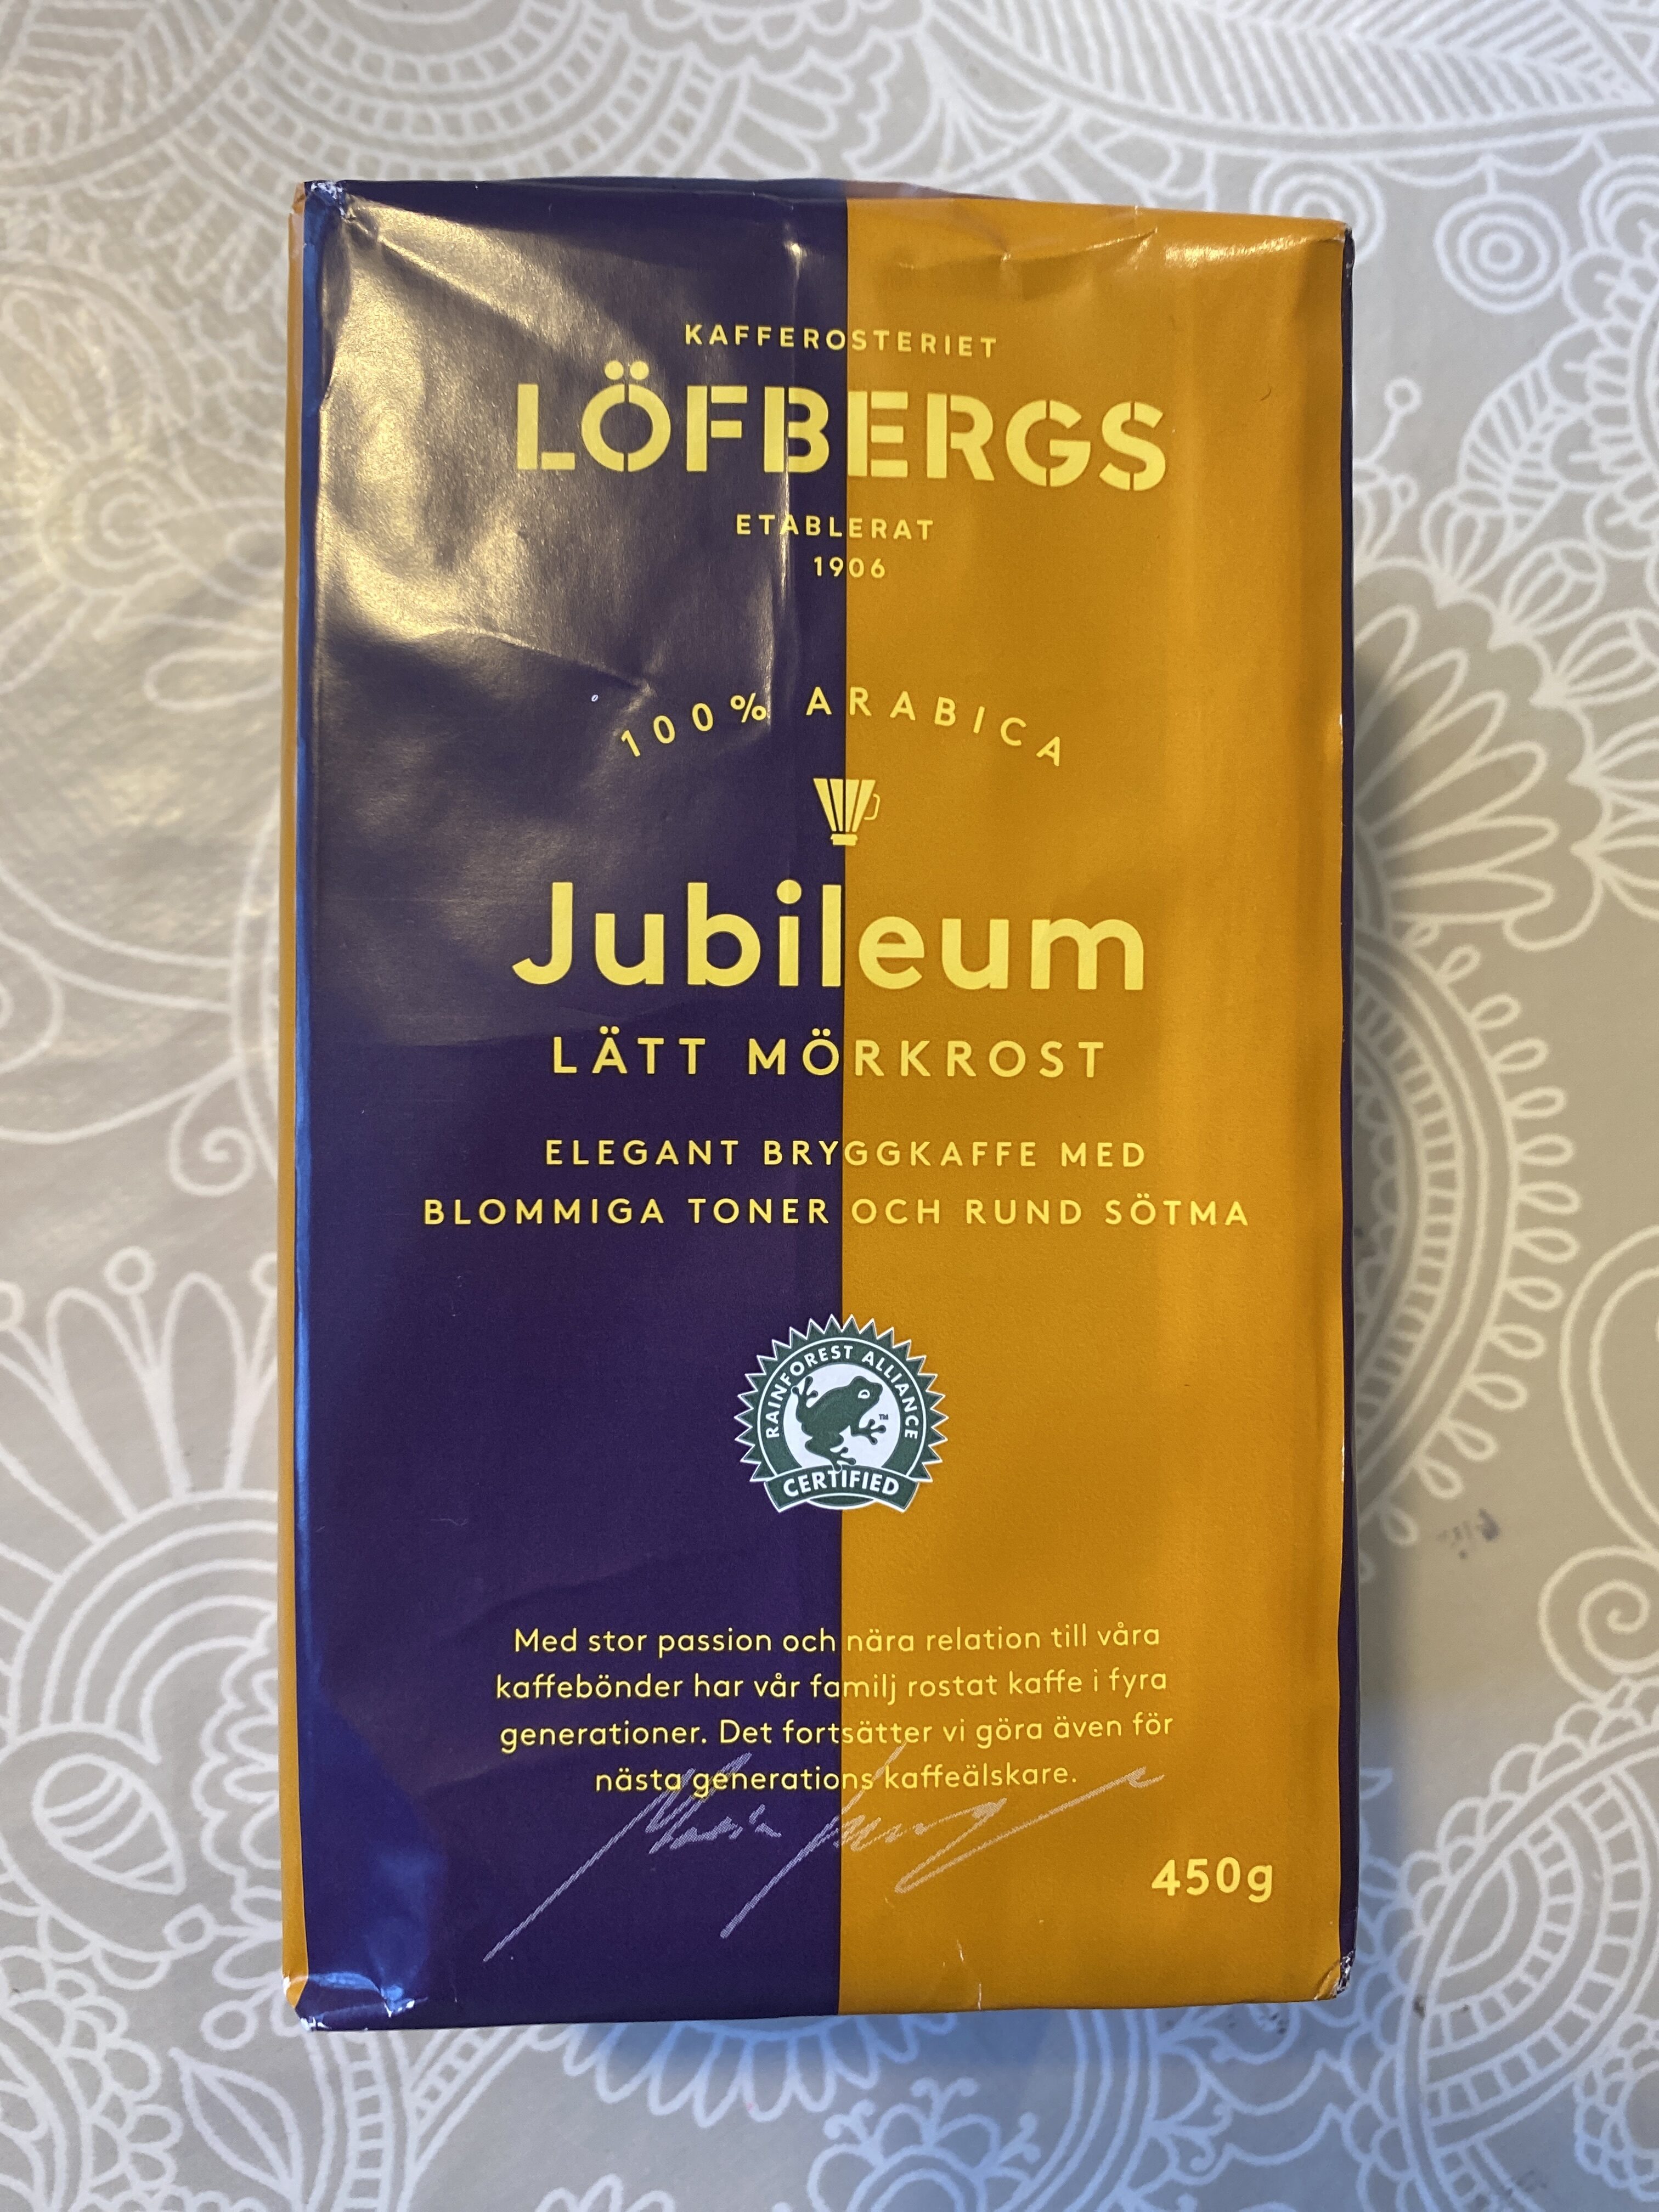 Löfbergs jubileum lätt mörkrost - Produkt - en